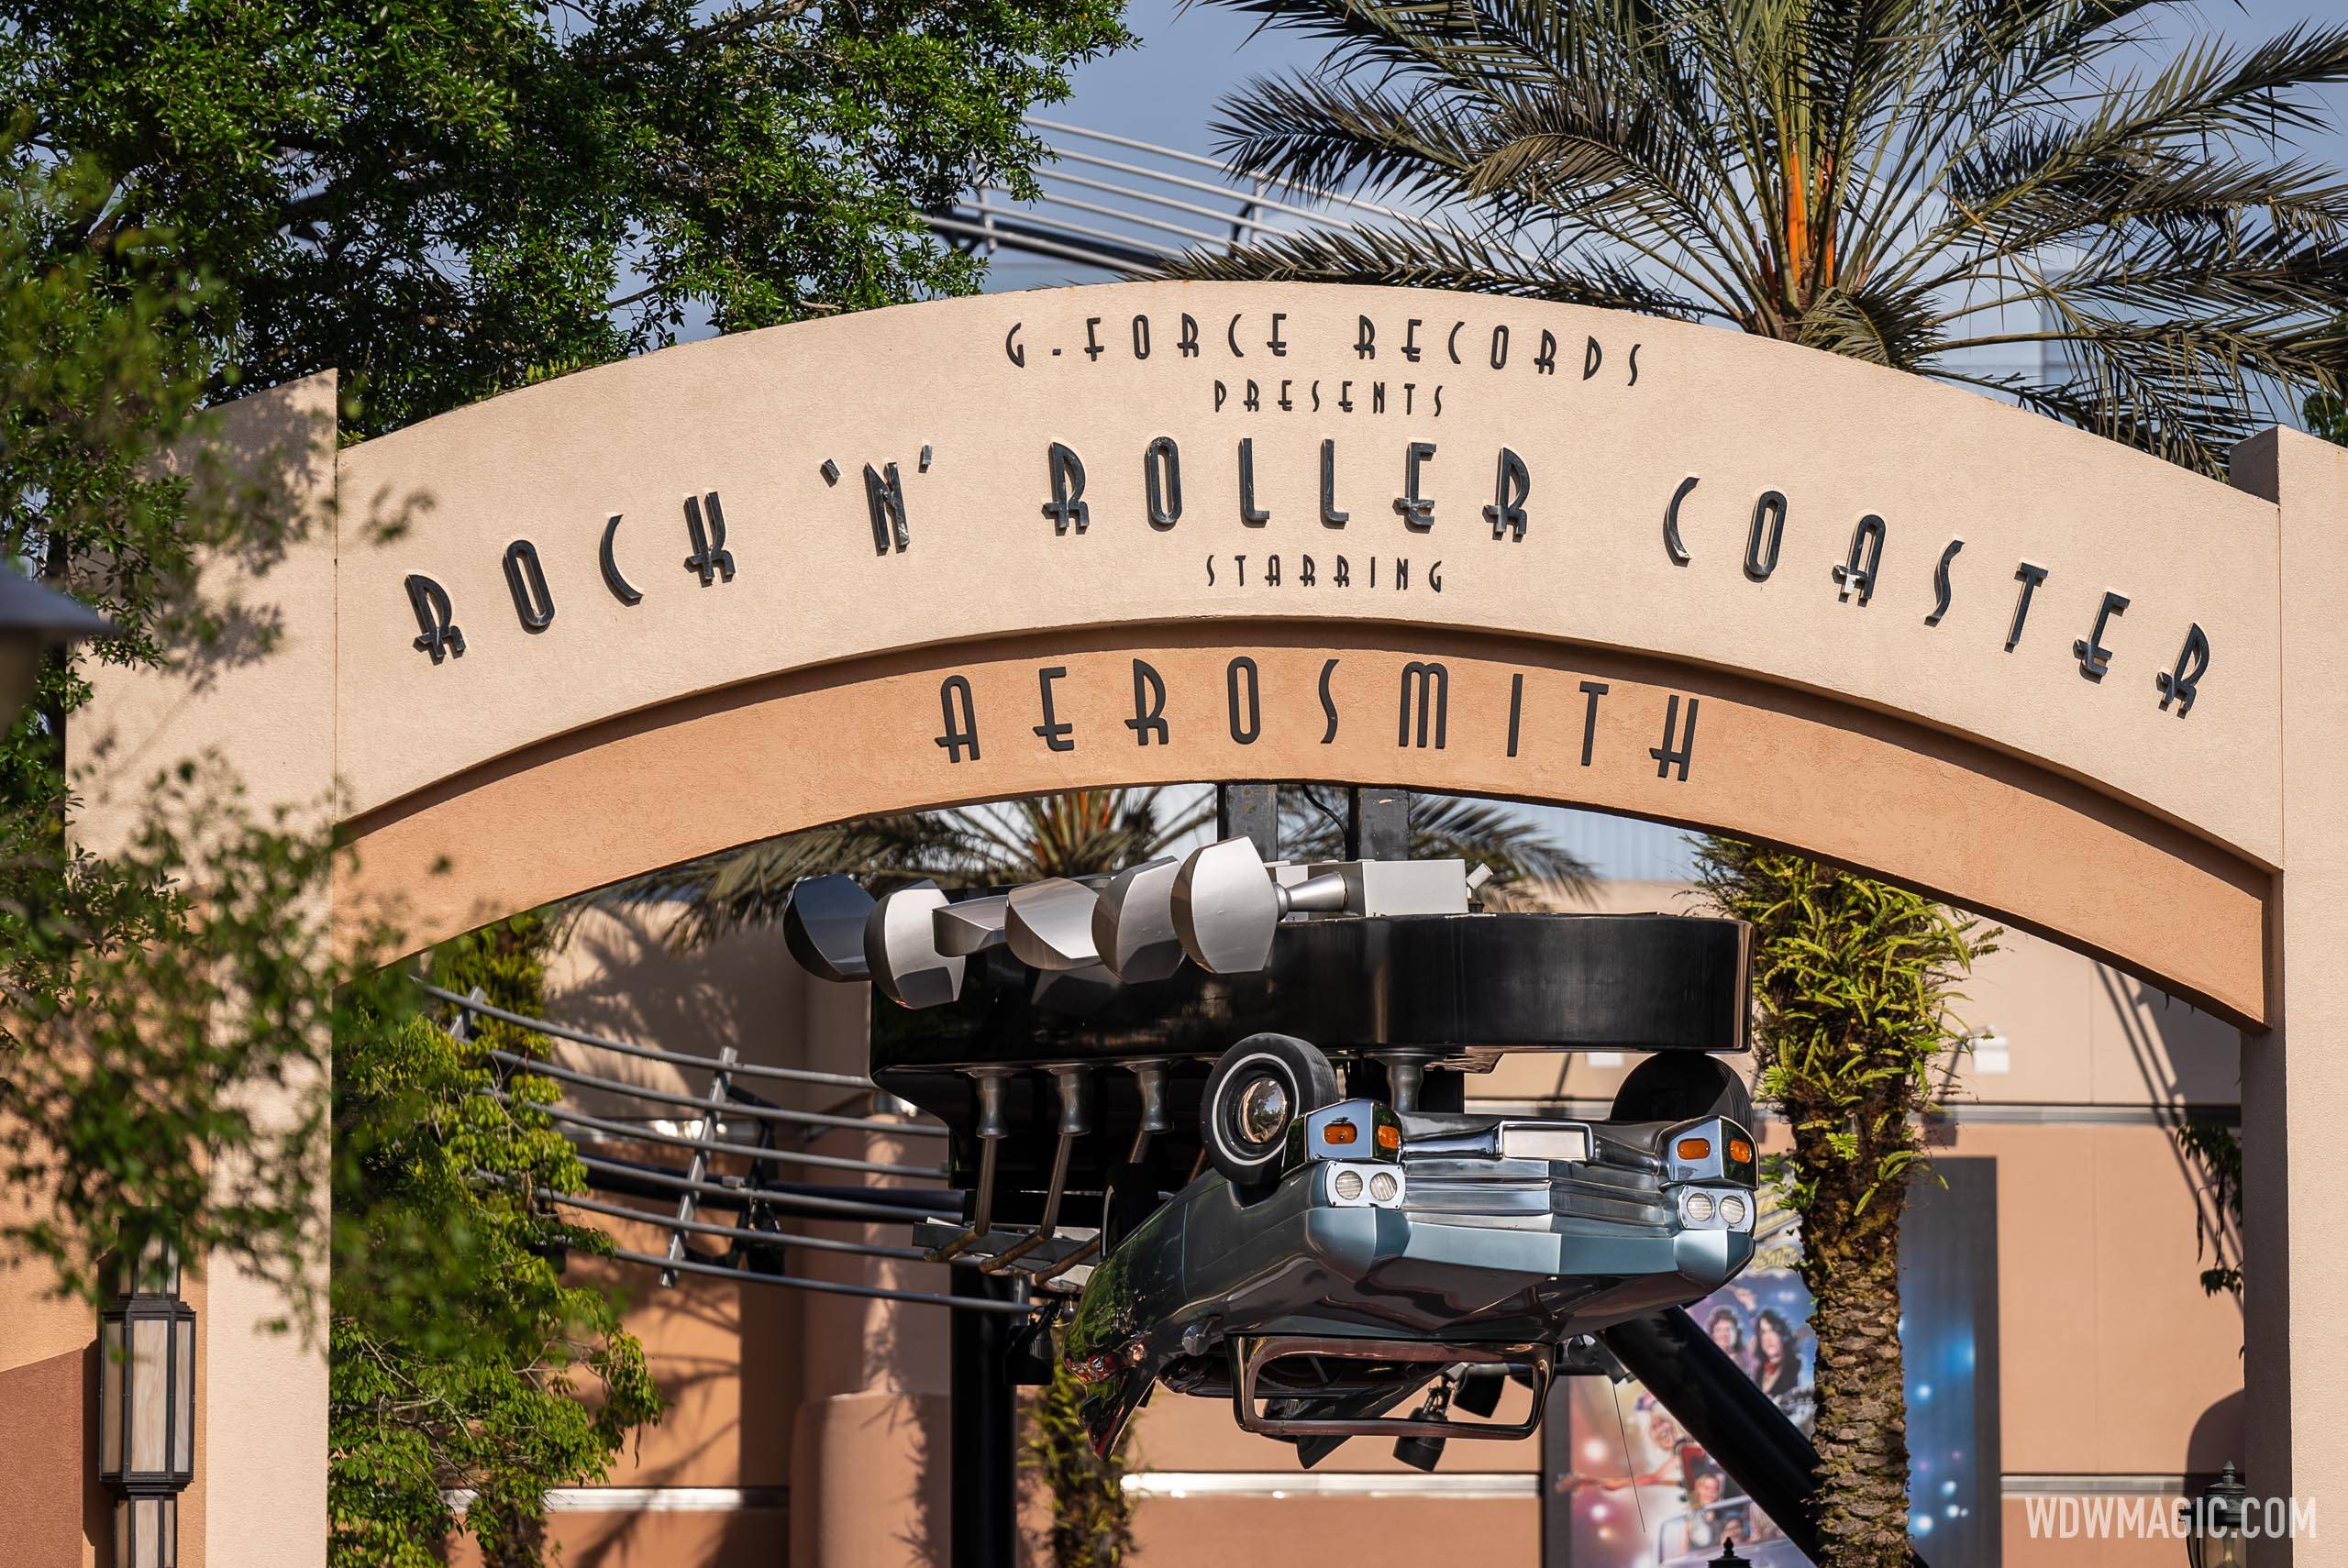 Rock 'n' Roller Coaster is back open (again)